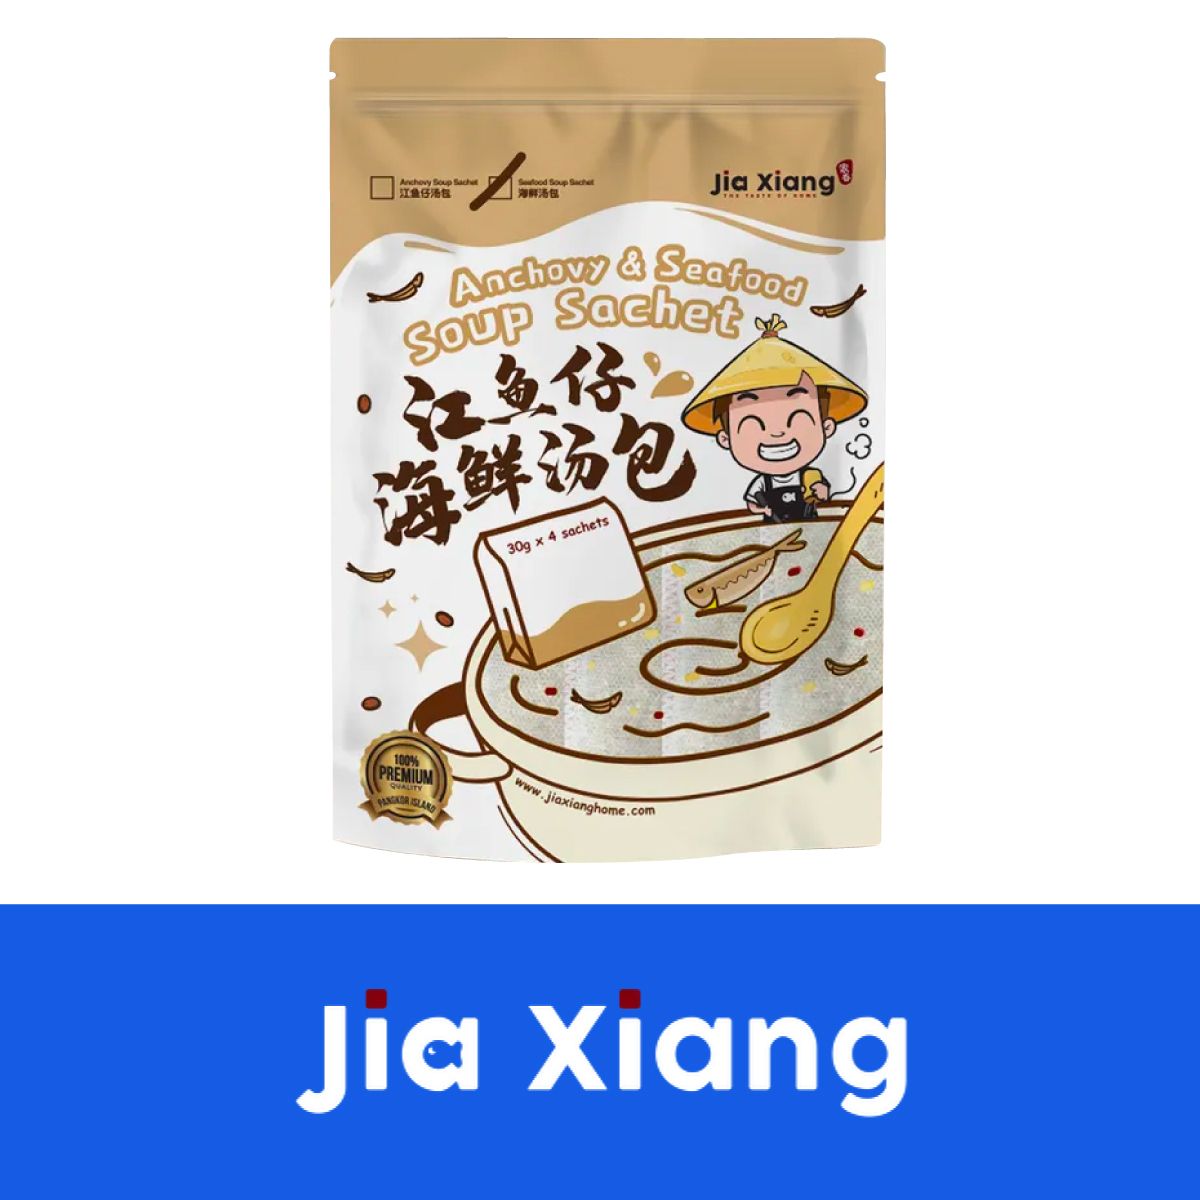 Jia Xiang | Malaysia Select